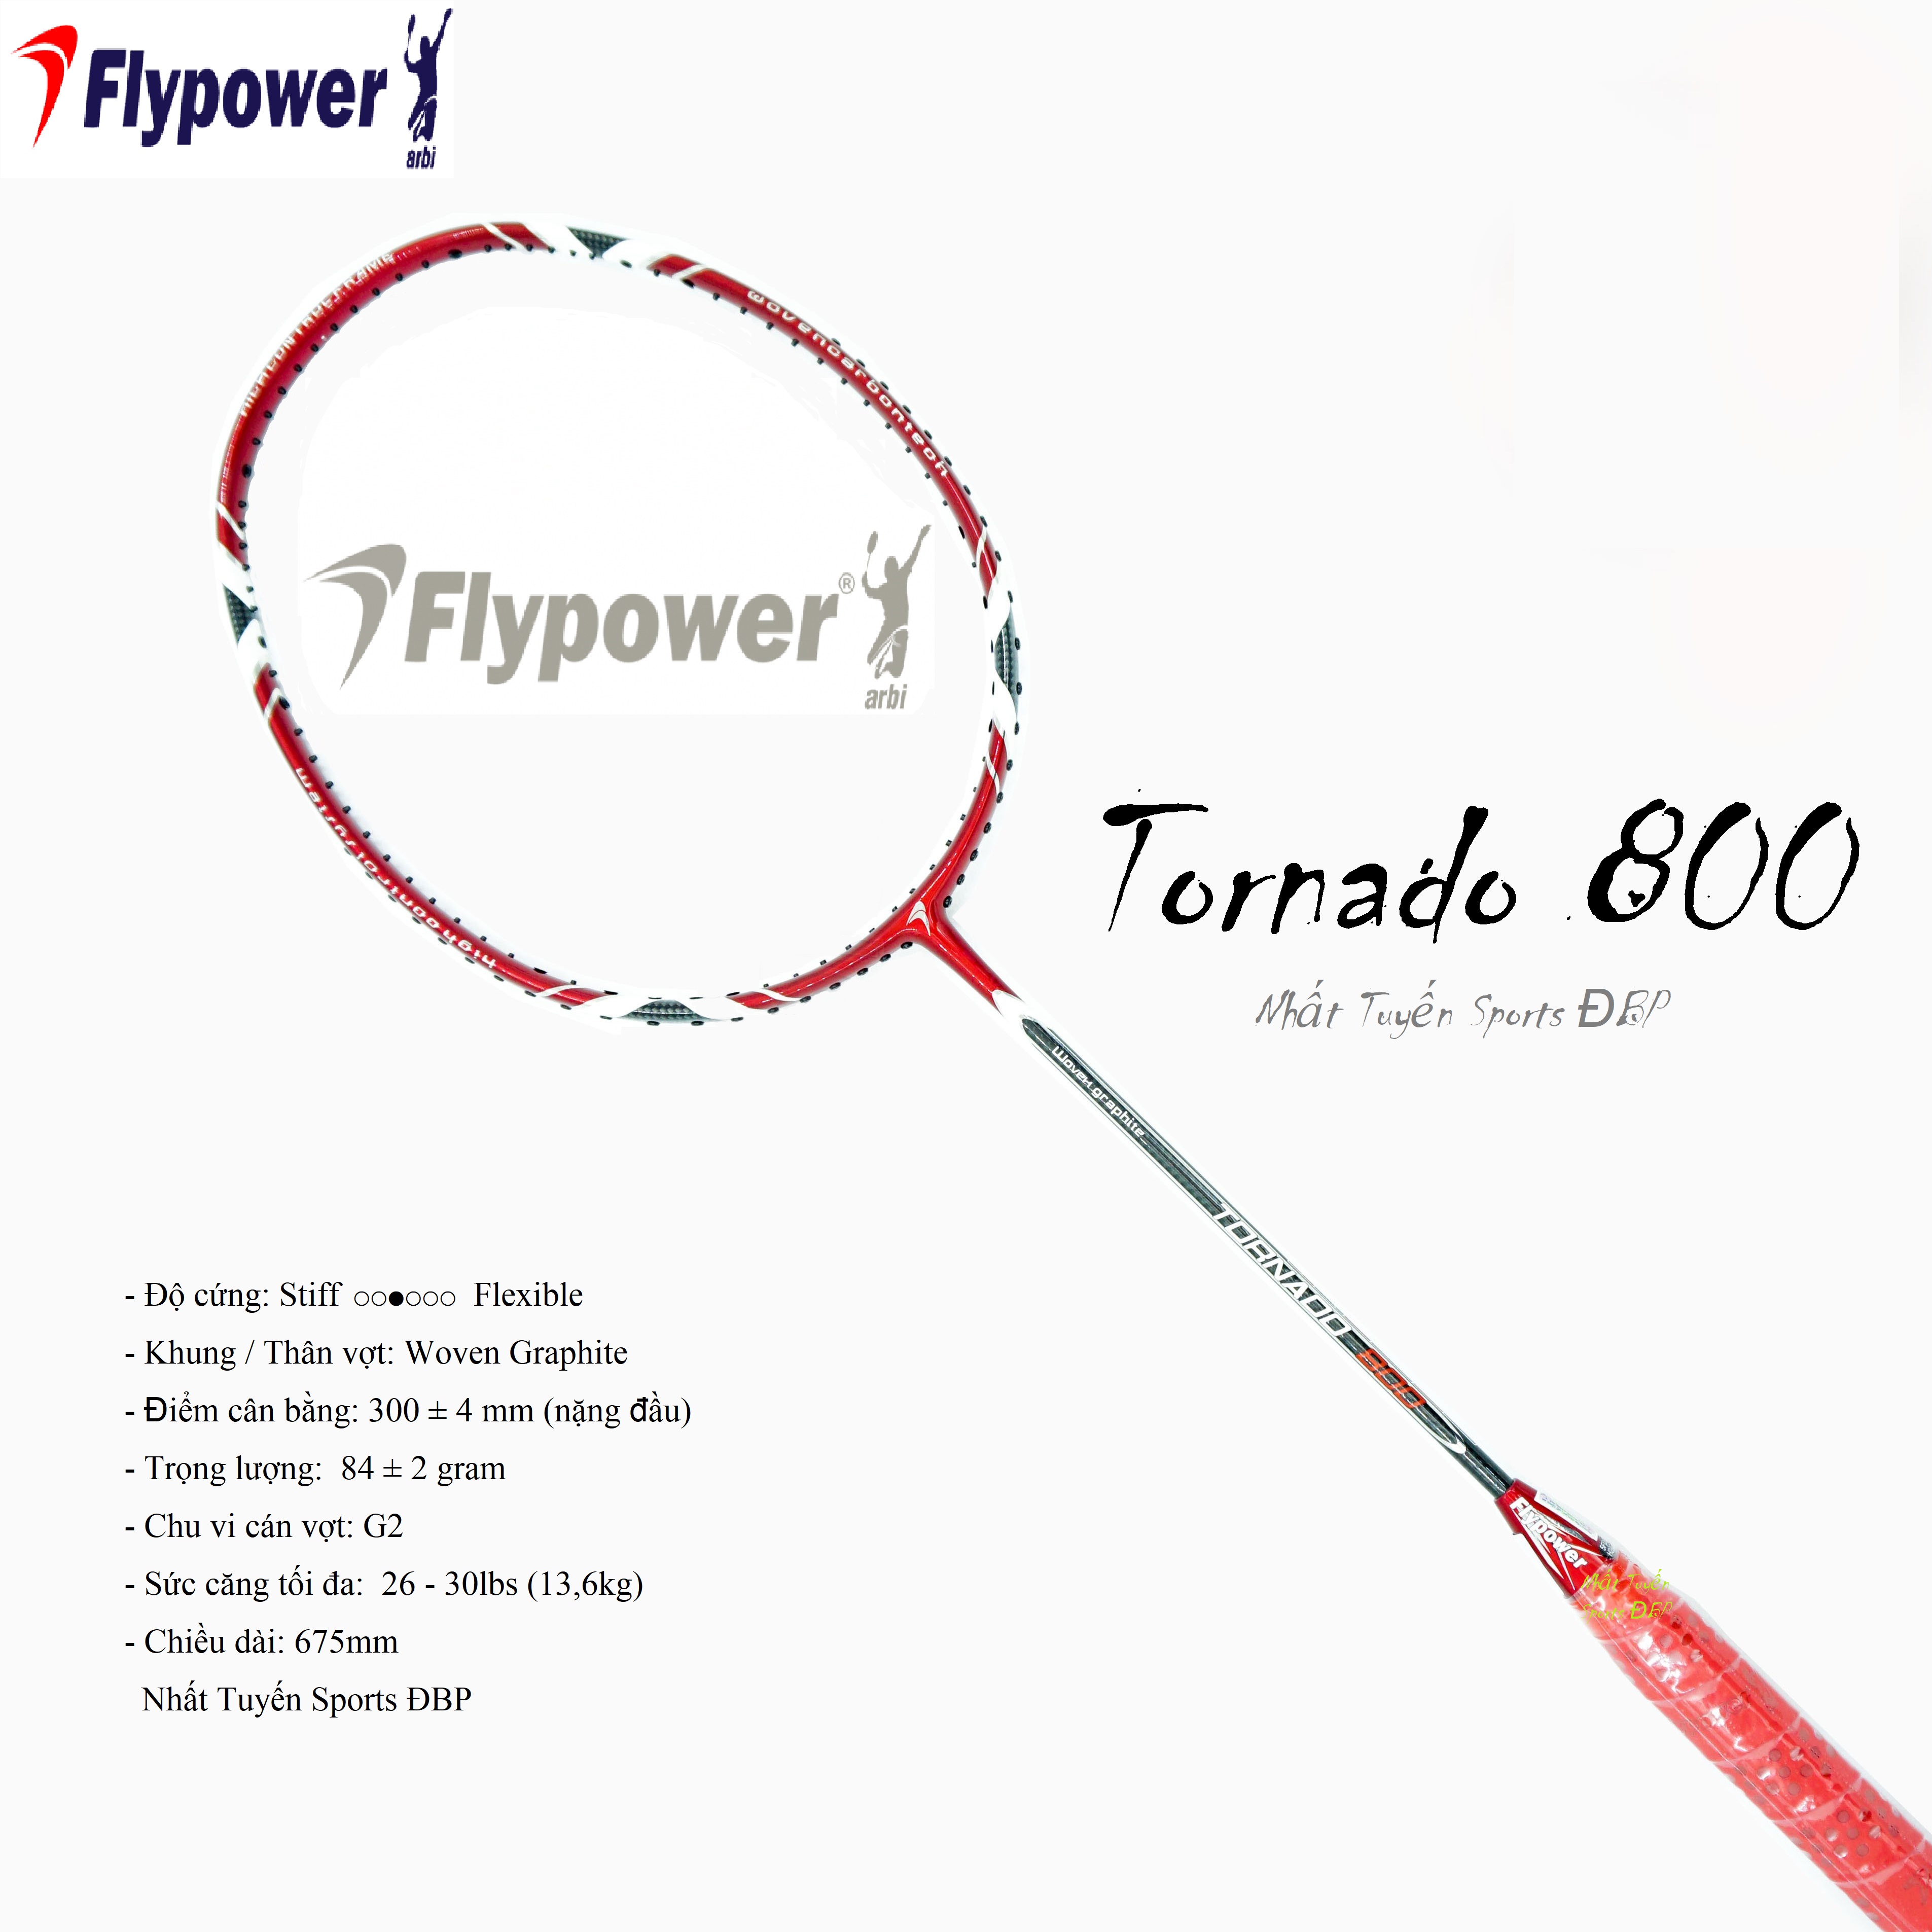 Vợt cầu lông Flypower Tornado 800 Chính hãng